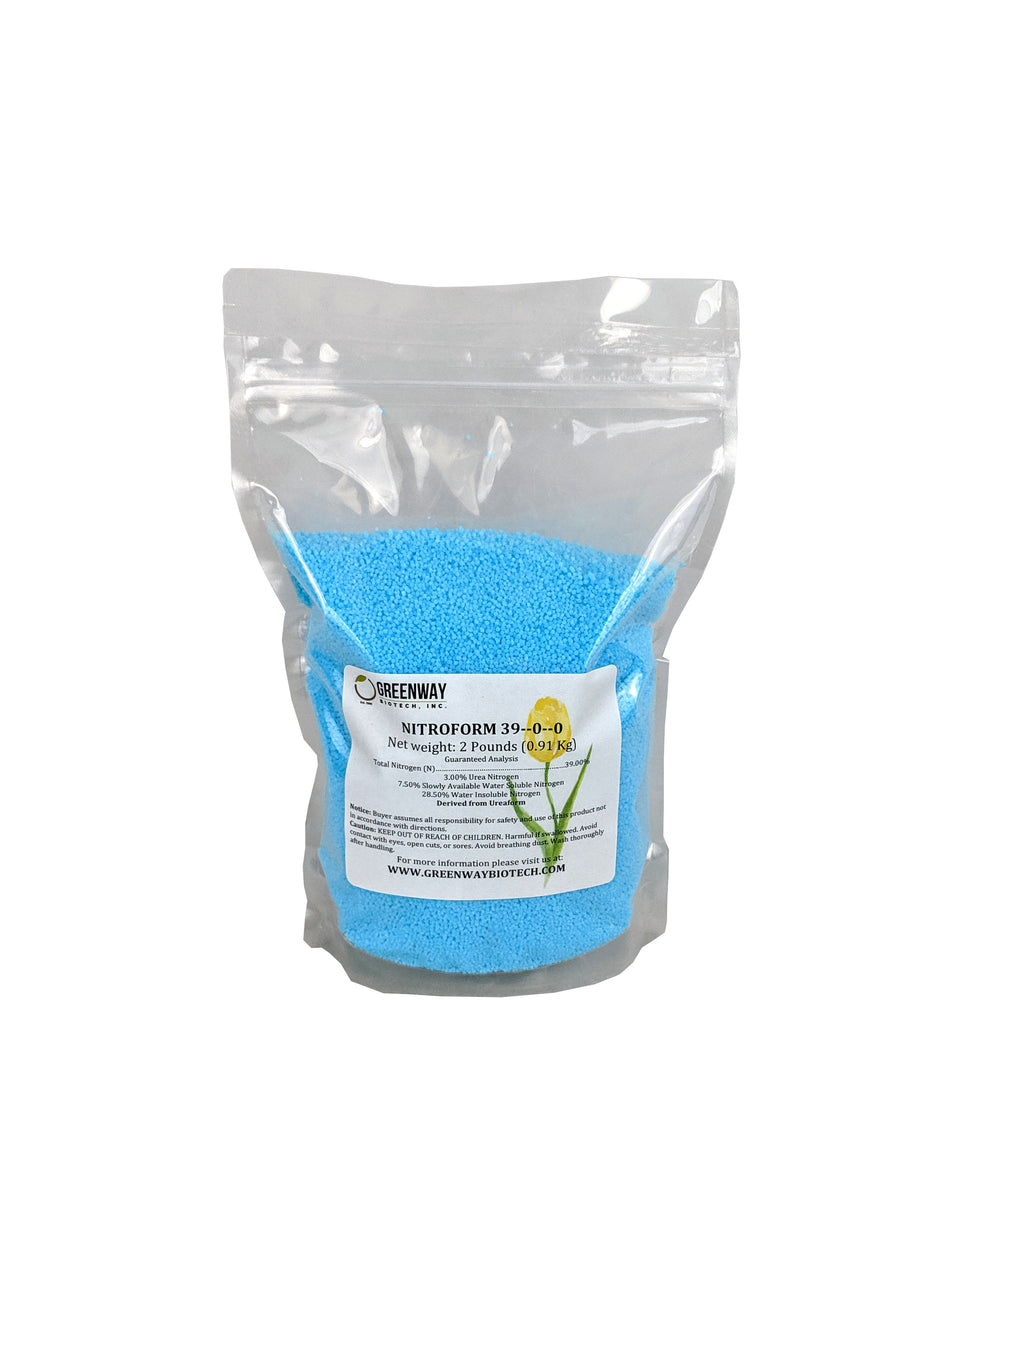 Nitroform Fertilizer 39-0-0 Slow Release 2 Pounds